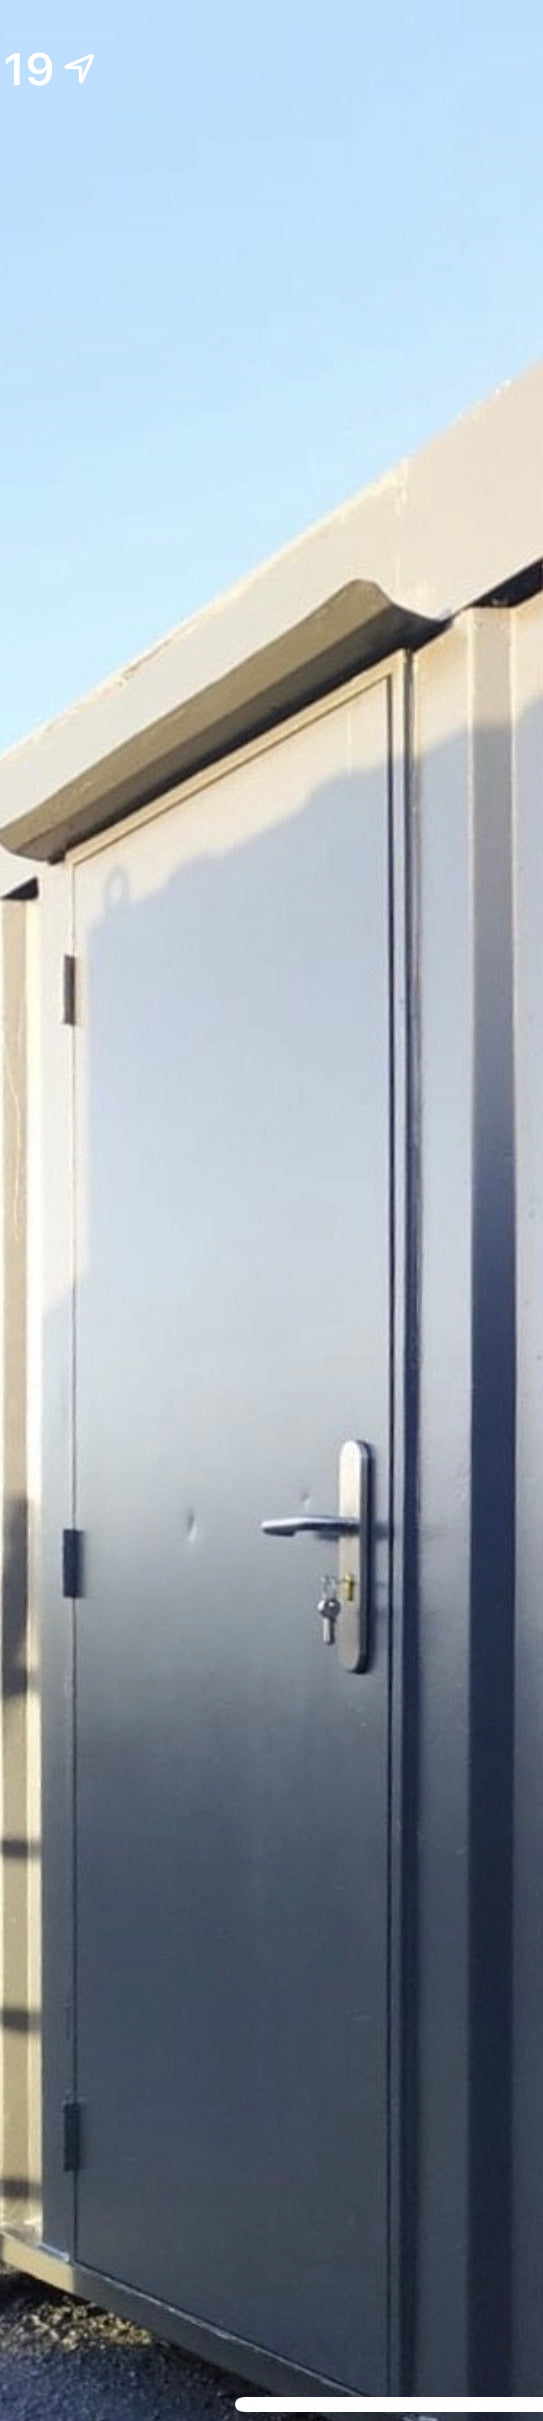 External Standard Steel Door Installation